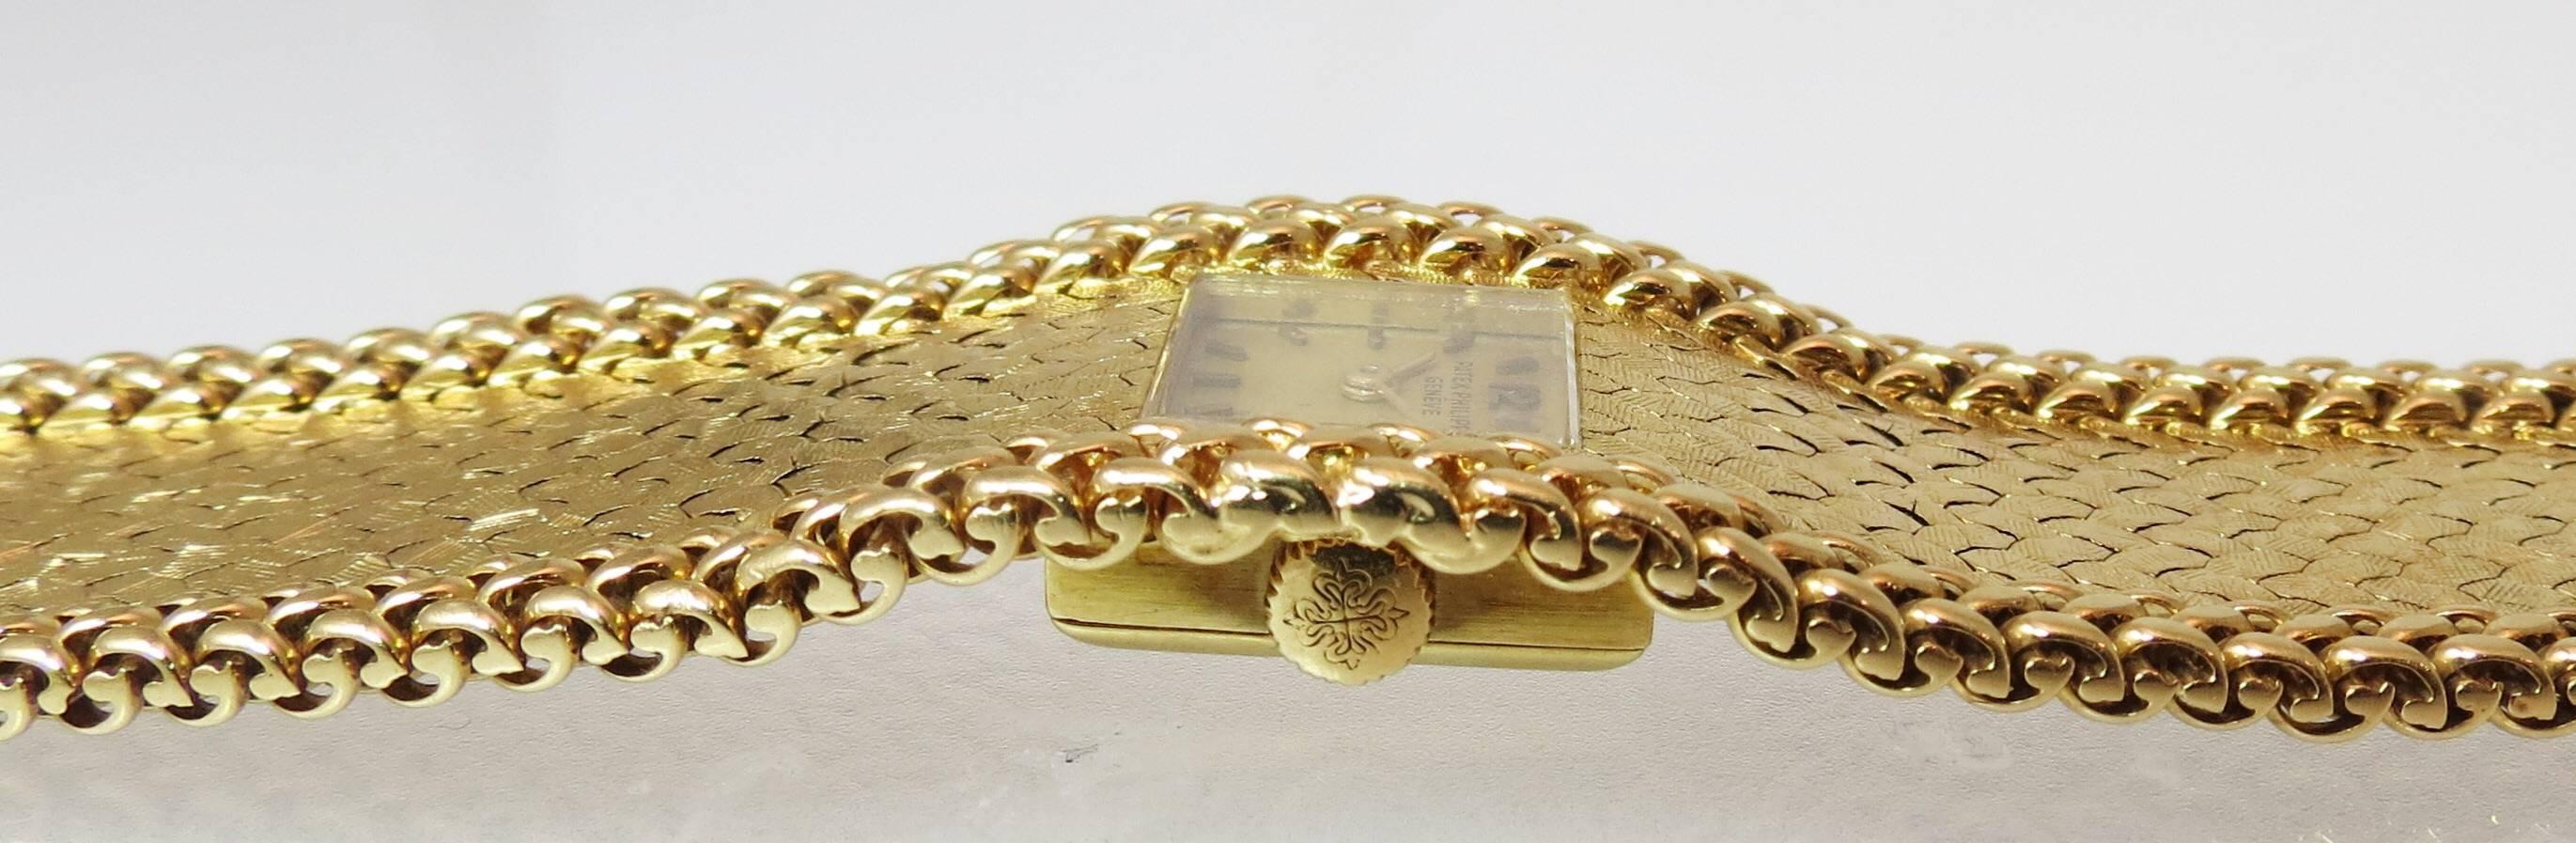 Damenarmbanduhr von Patek Philippe aus 18 Karat Gelbgold, florentinische Ausführung mit dreireihiger geflochtener Bordüre, Handaufzug und Sicherheitsschließe in Form einer Acht.
Letzter Verkauf $30.000